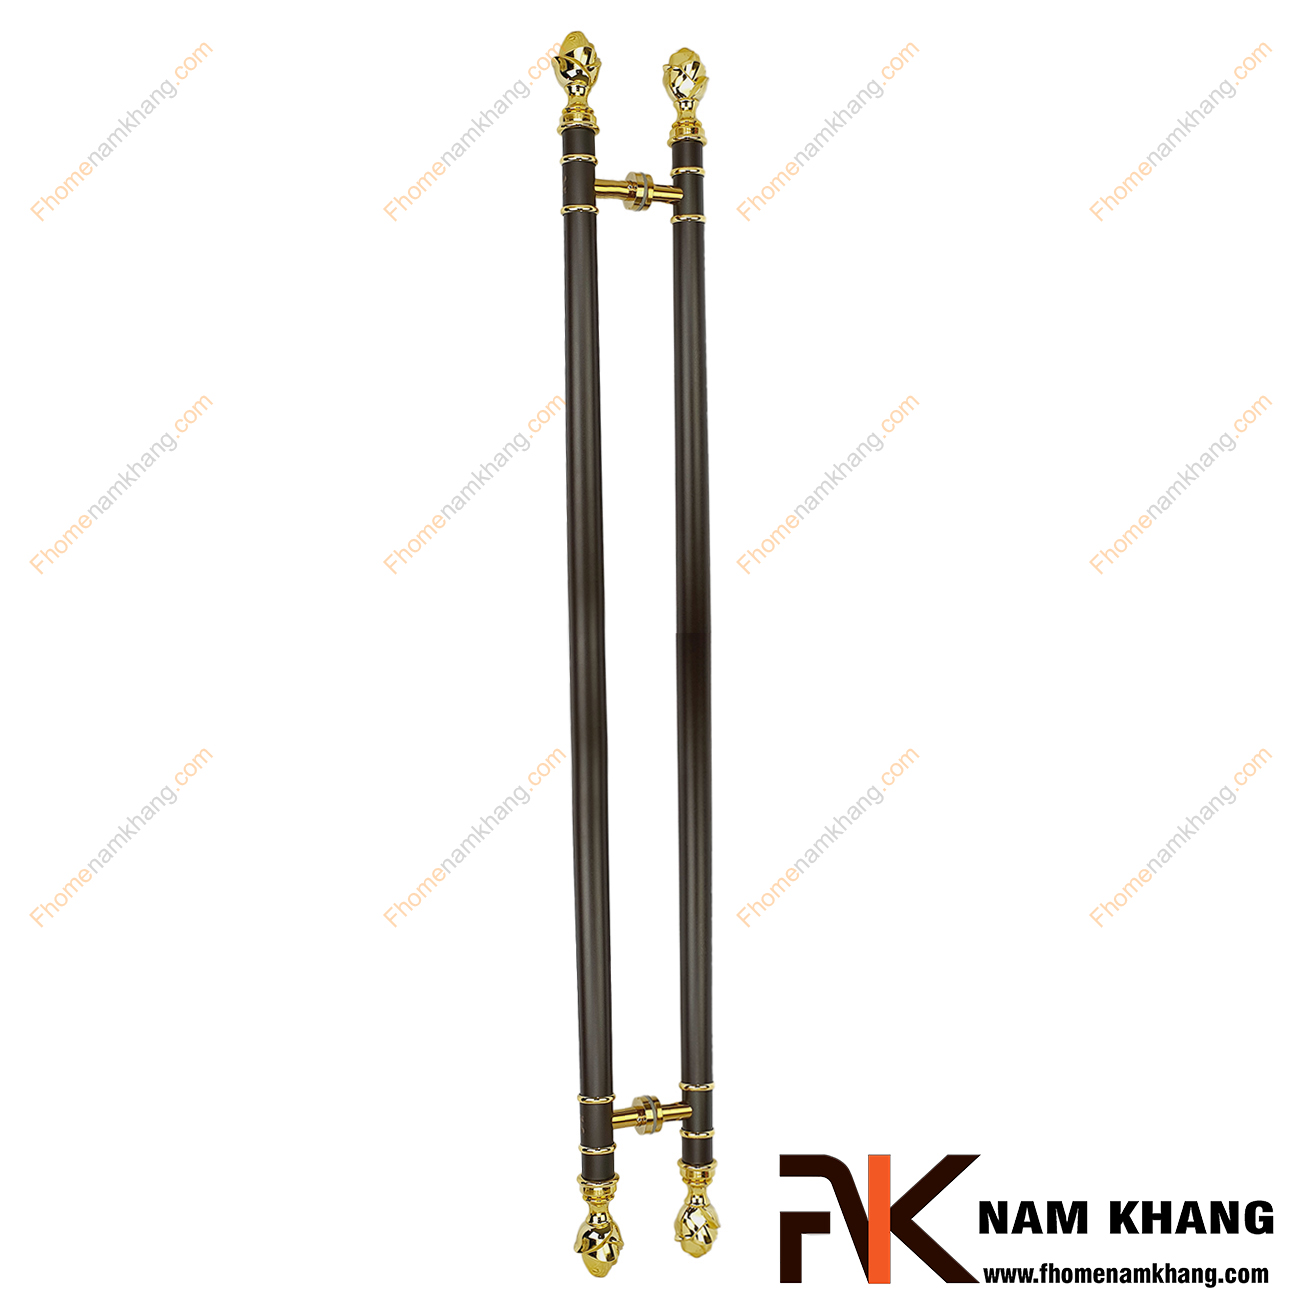 Tay nắm cửa chính thân đen phối đầu hoa hồng vàng NKC011-HCF sản phẩm tay nắm tủ đồng tâm dùng cho nhiều loại cửa  đầy đủ các chất liệu theo thiết kế nội thất.